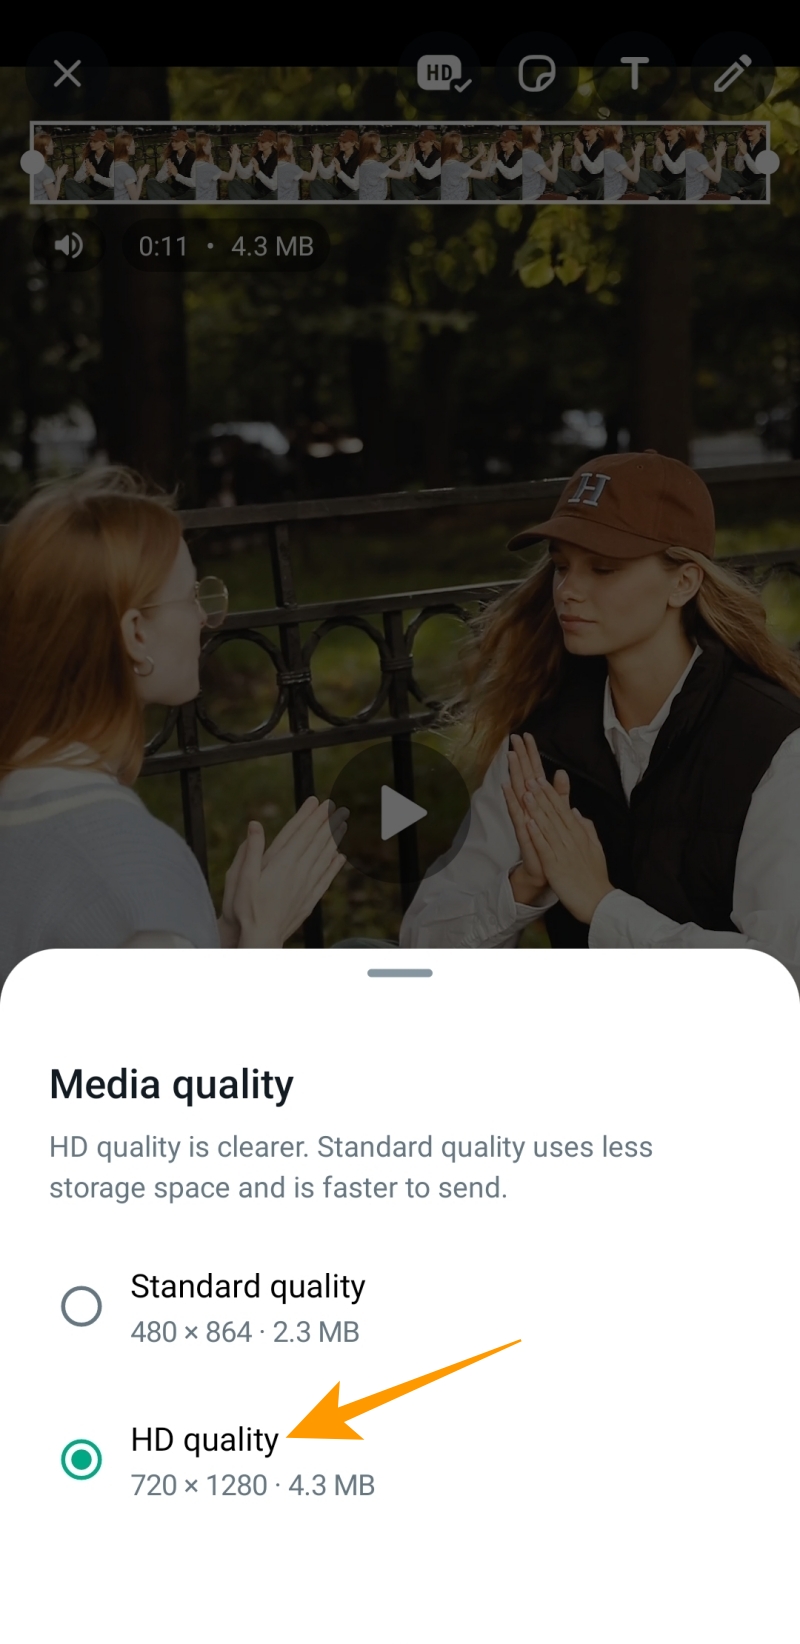 Media quality options